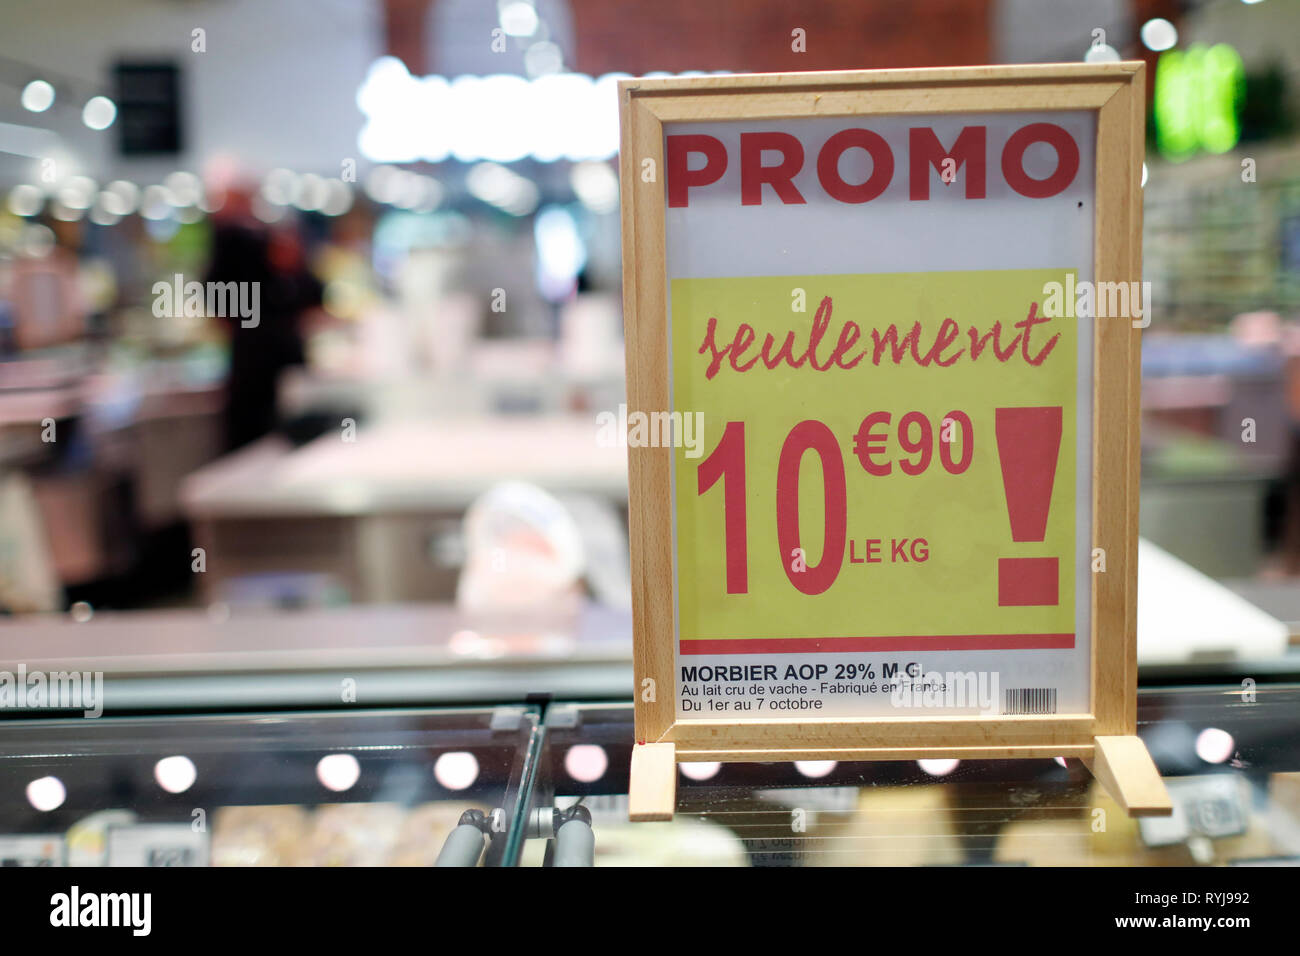 Promoción de ventas. Supermercado. Francia. Foto de stock